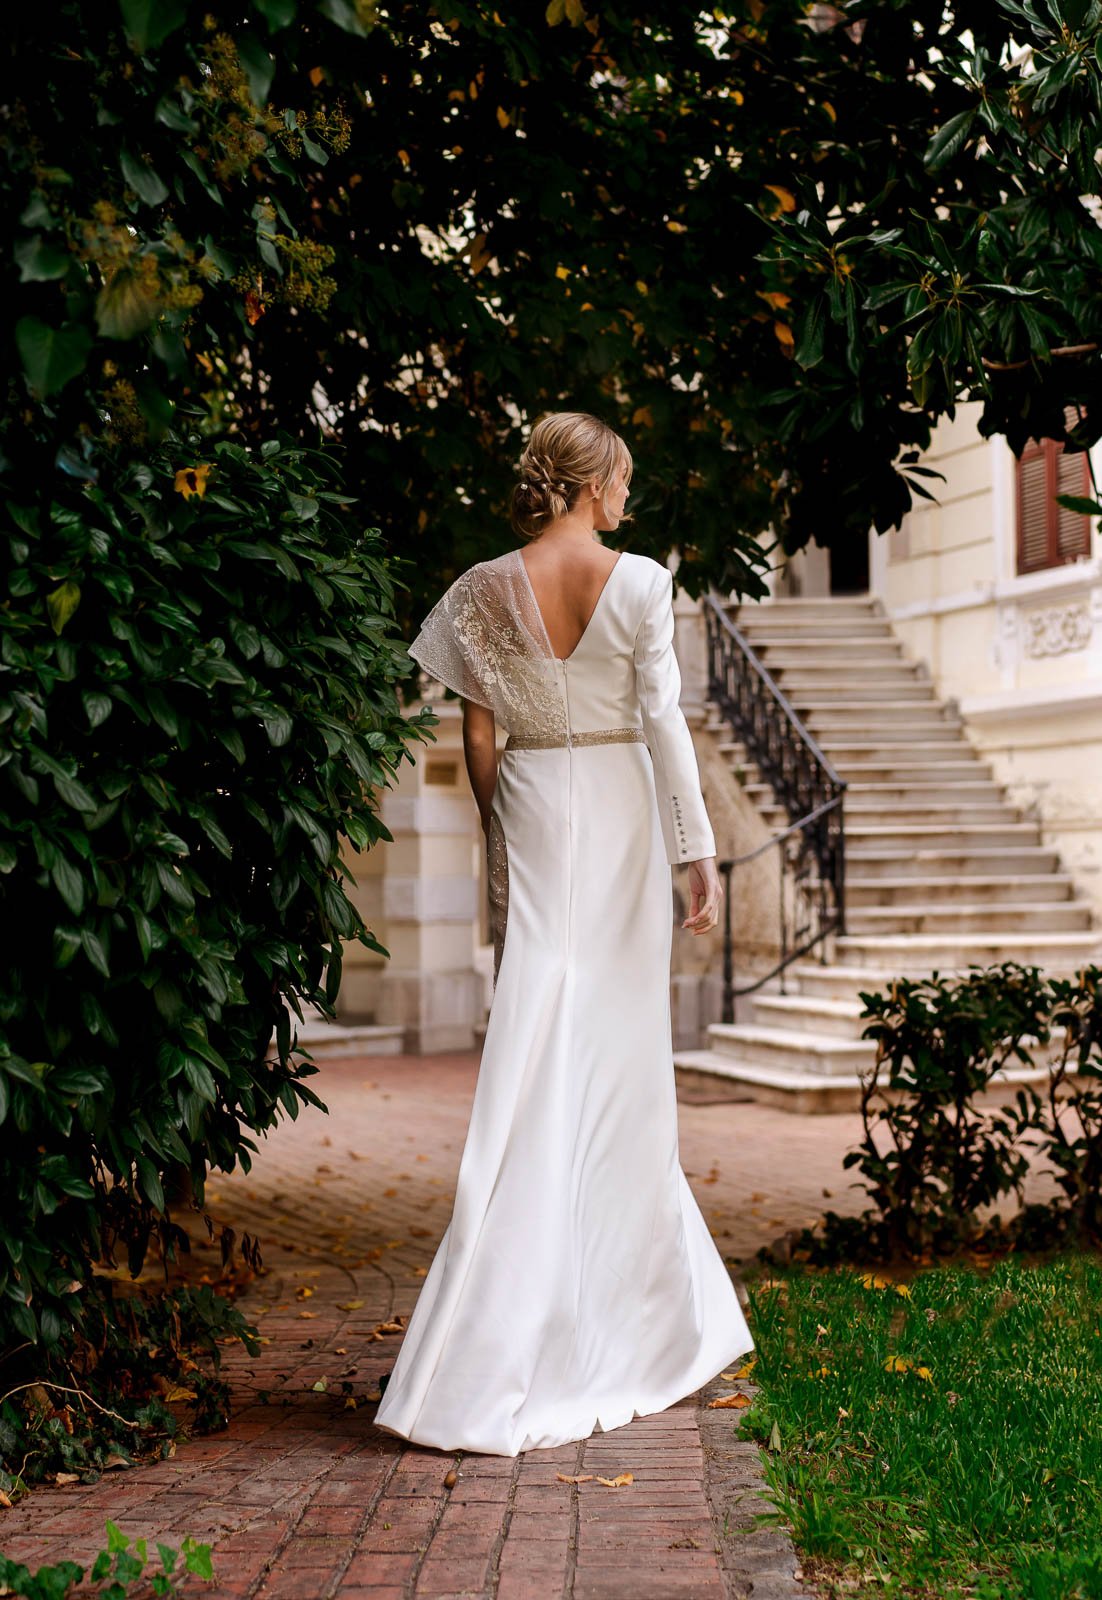 Φορέματα για γάμο και βάφτιση από την σχεδιάστρια ALKMINI στην Θεσσαλονίκη  — ALKMINI fashion